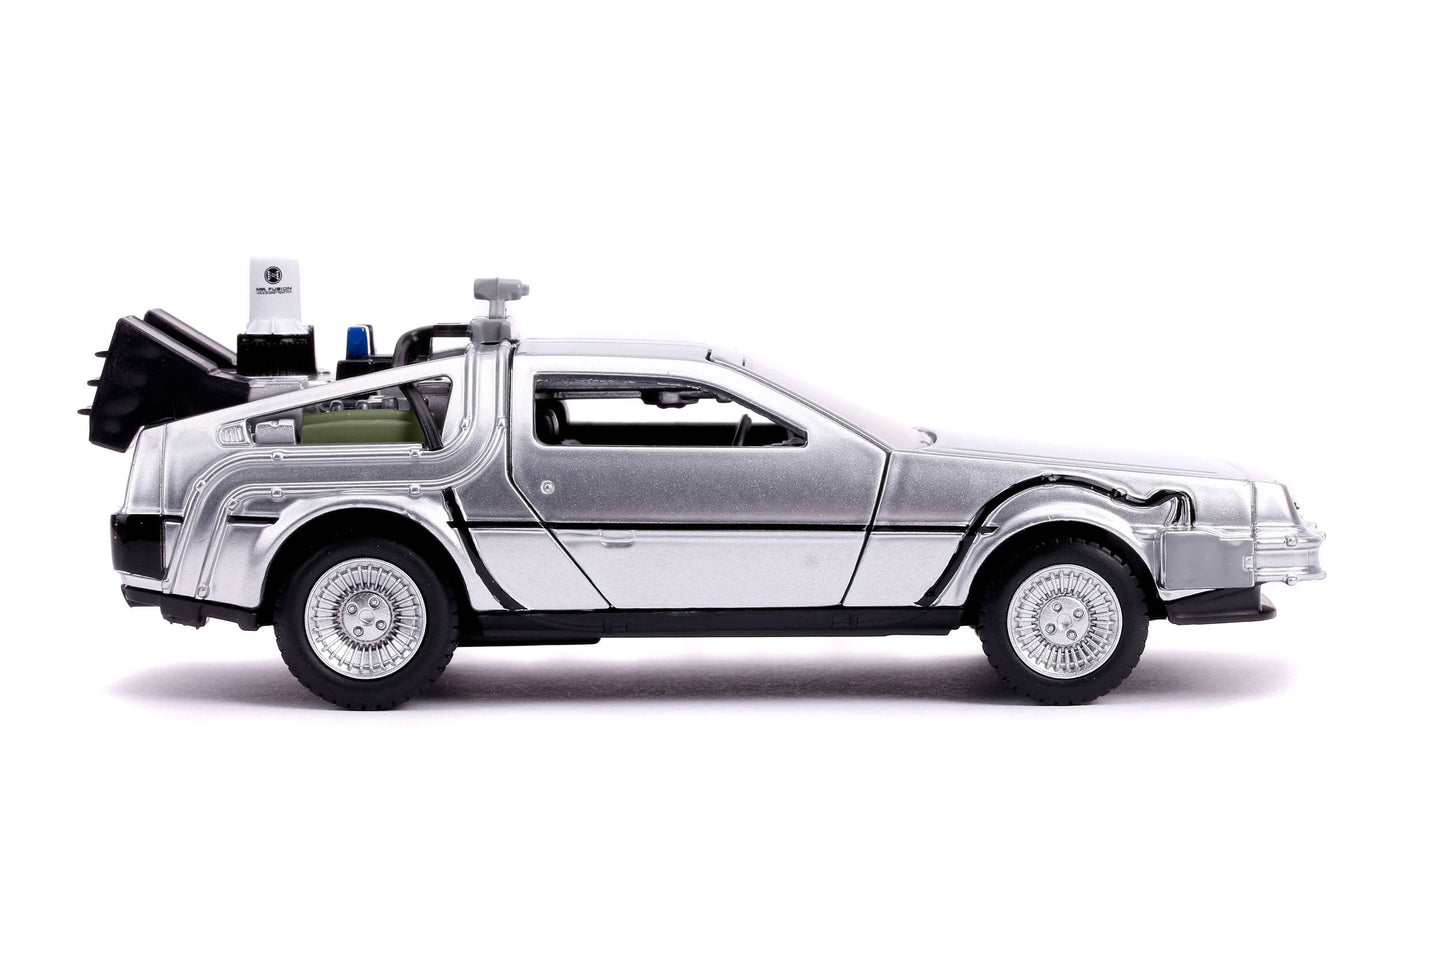 Back To The Future II - DeLorean Time Machine